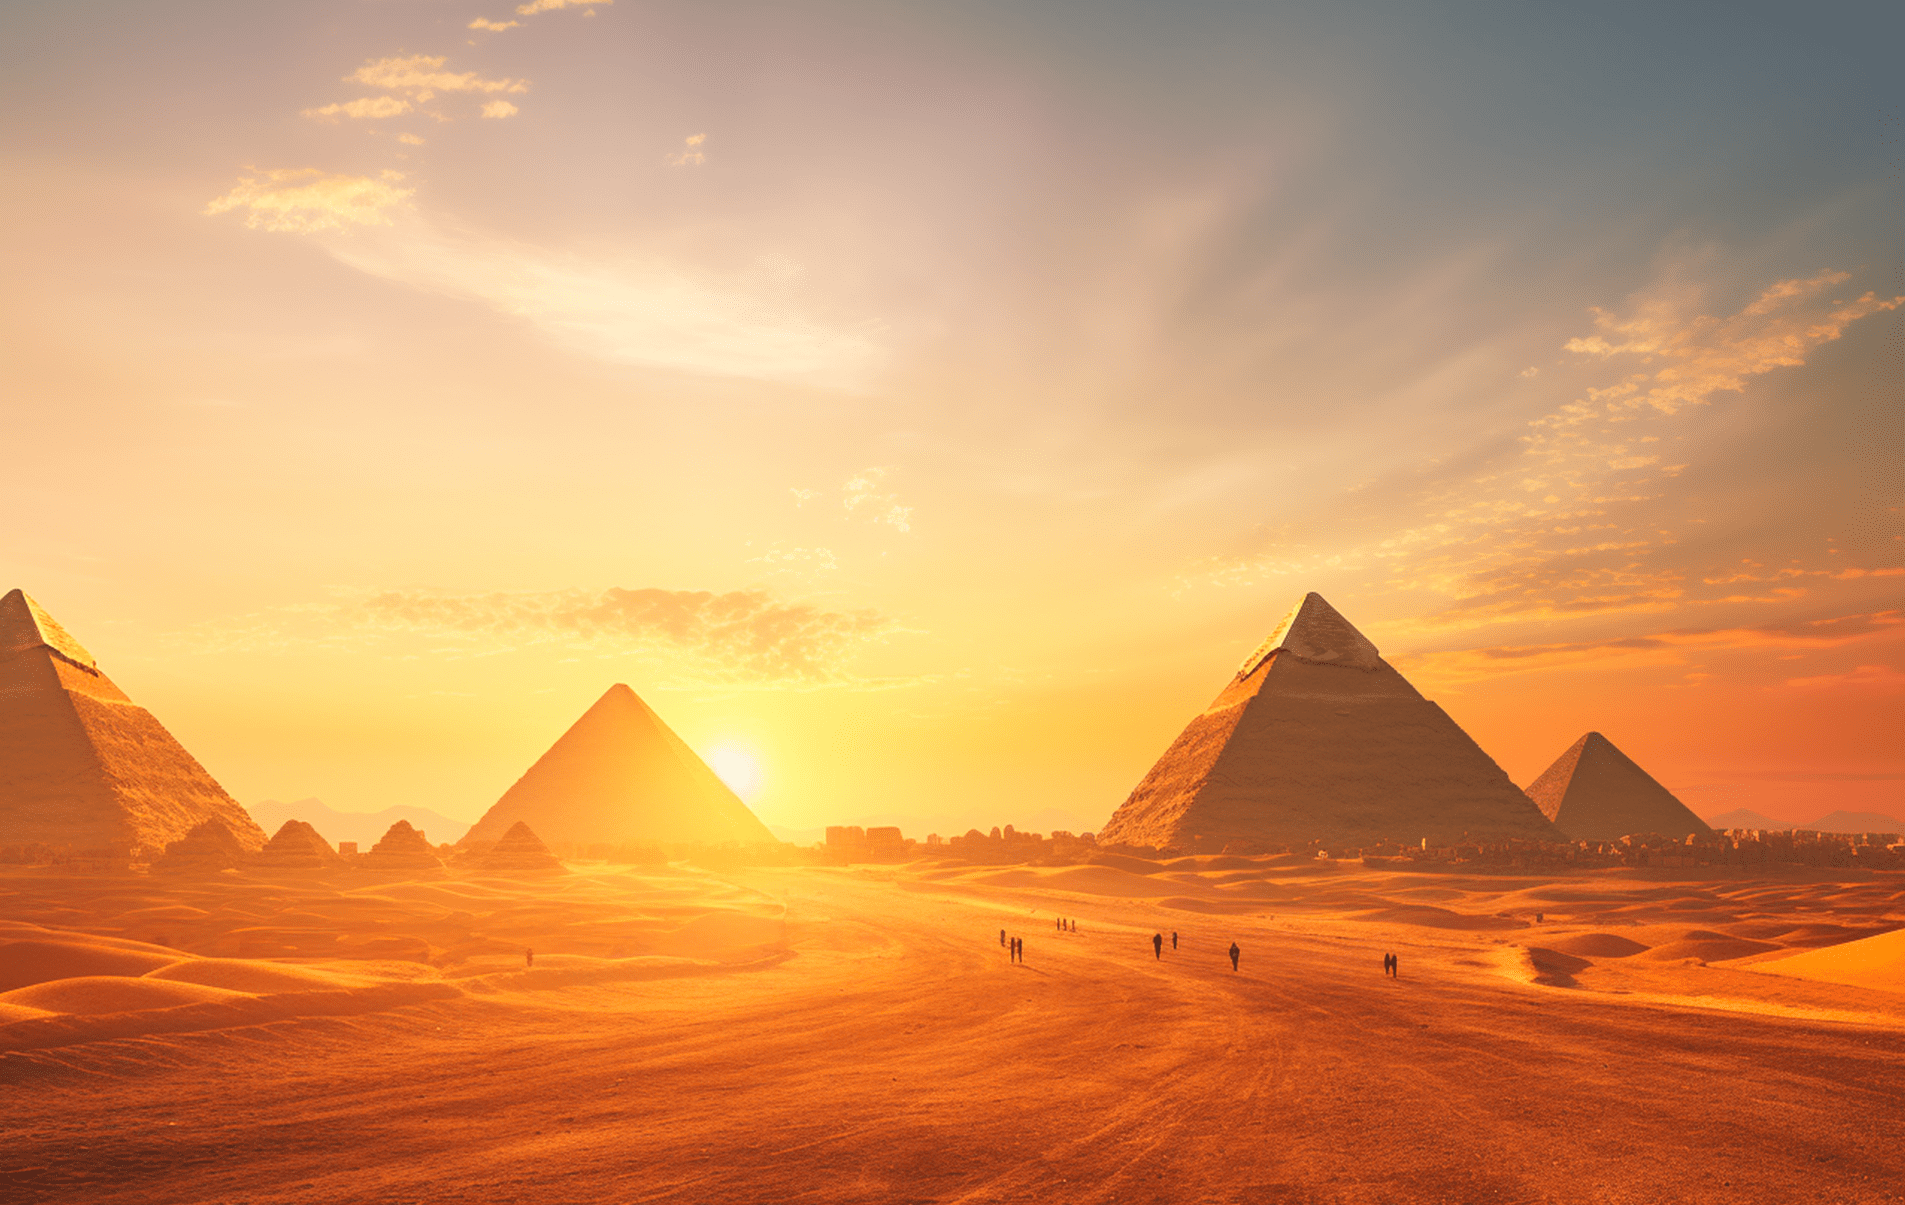 Pirâmides Egípcias